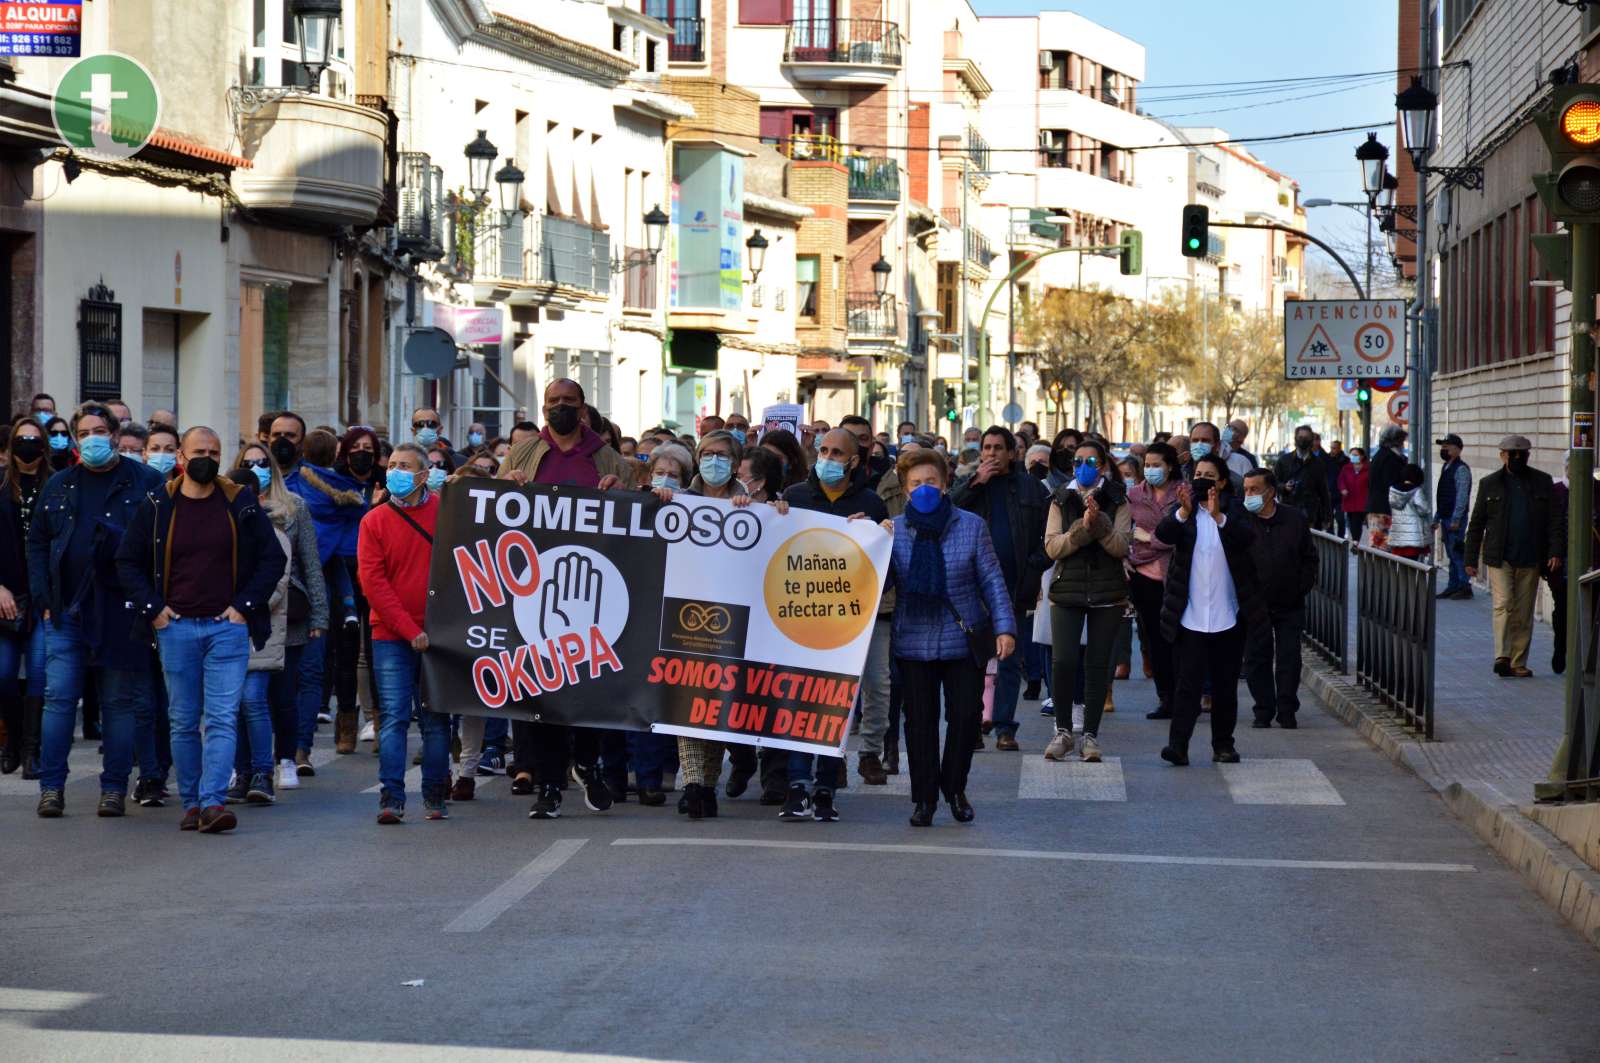 Unos 300 vecinos de Tomelloso salen a la calle para manifestarse contra la okupación ilegal